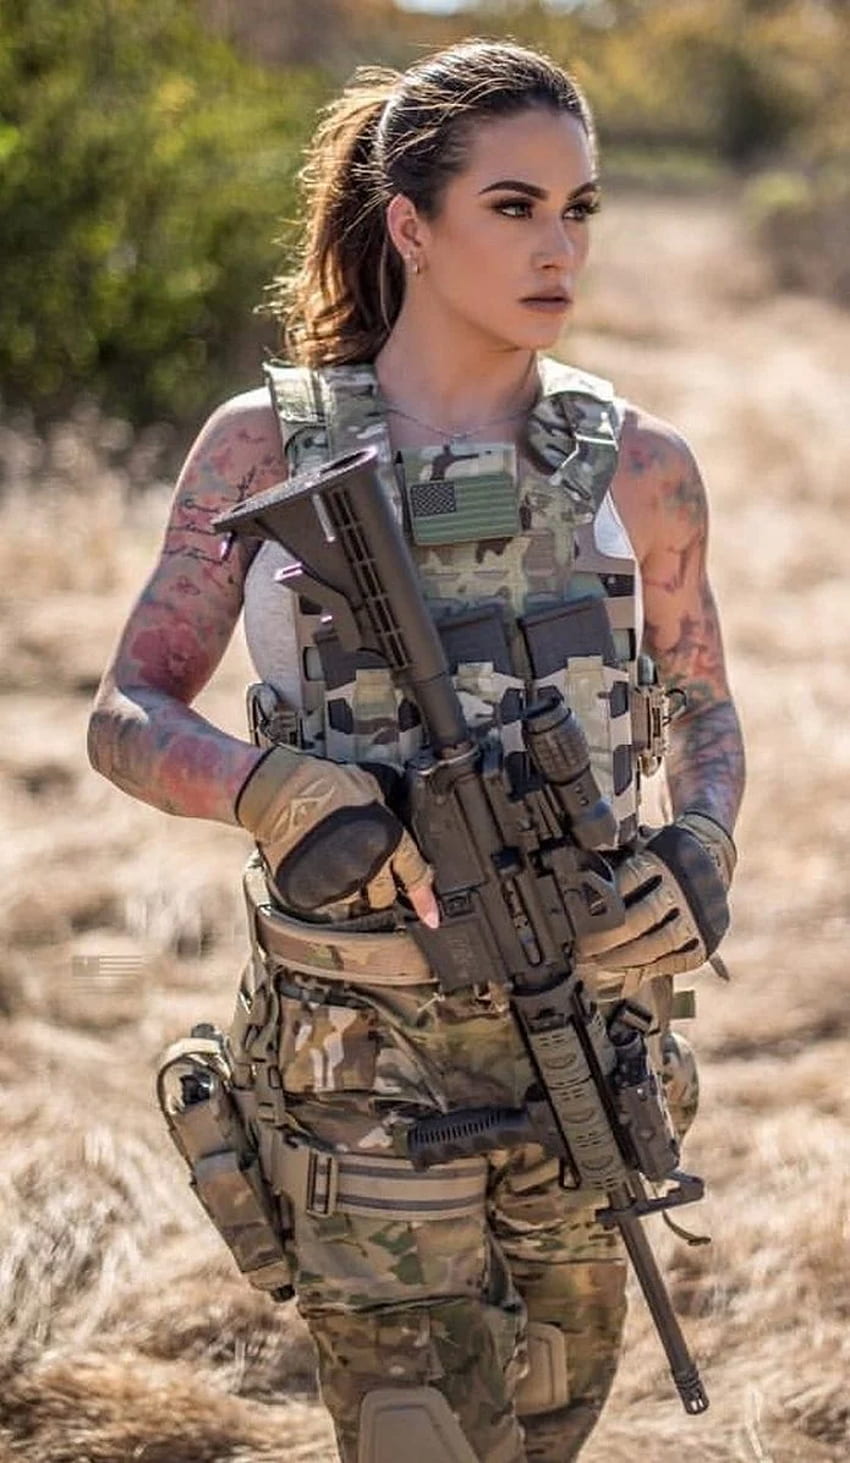 Hot Military Babes - Chicas y armas - Chicas con armas fondo de pantalla del teléfono